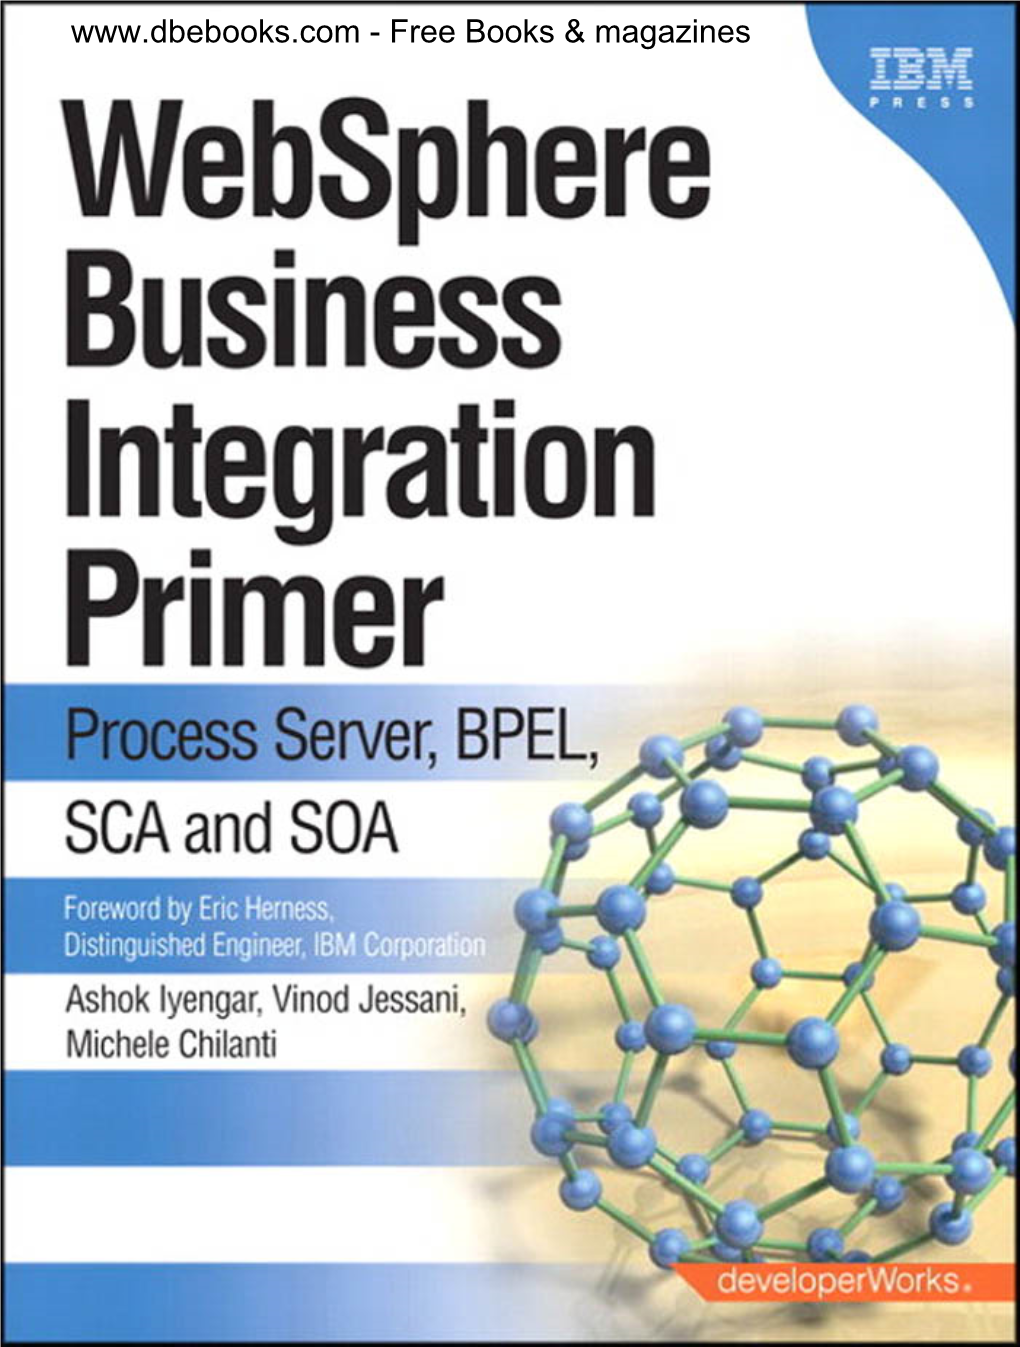 Websphere Business Integration Primer Process Server, BPEL, SCA